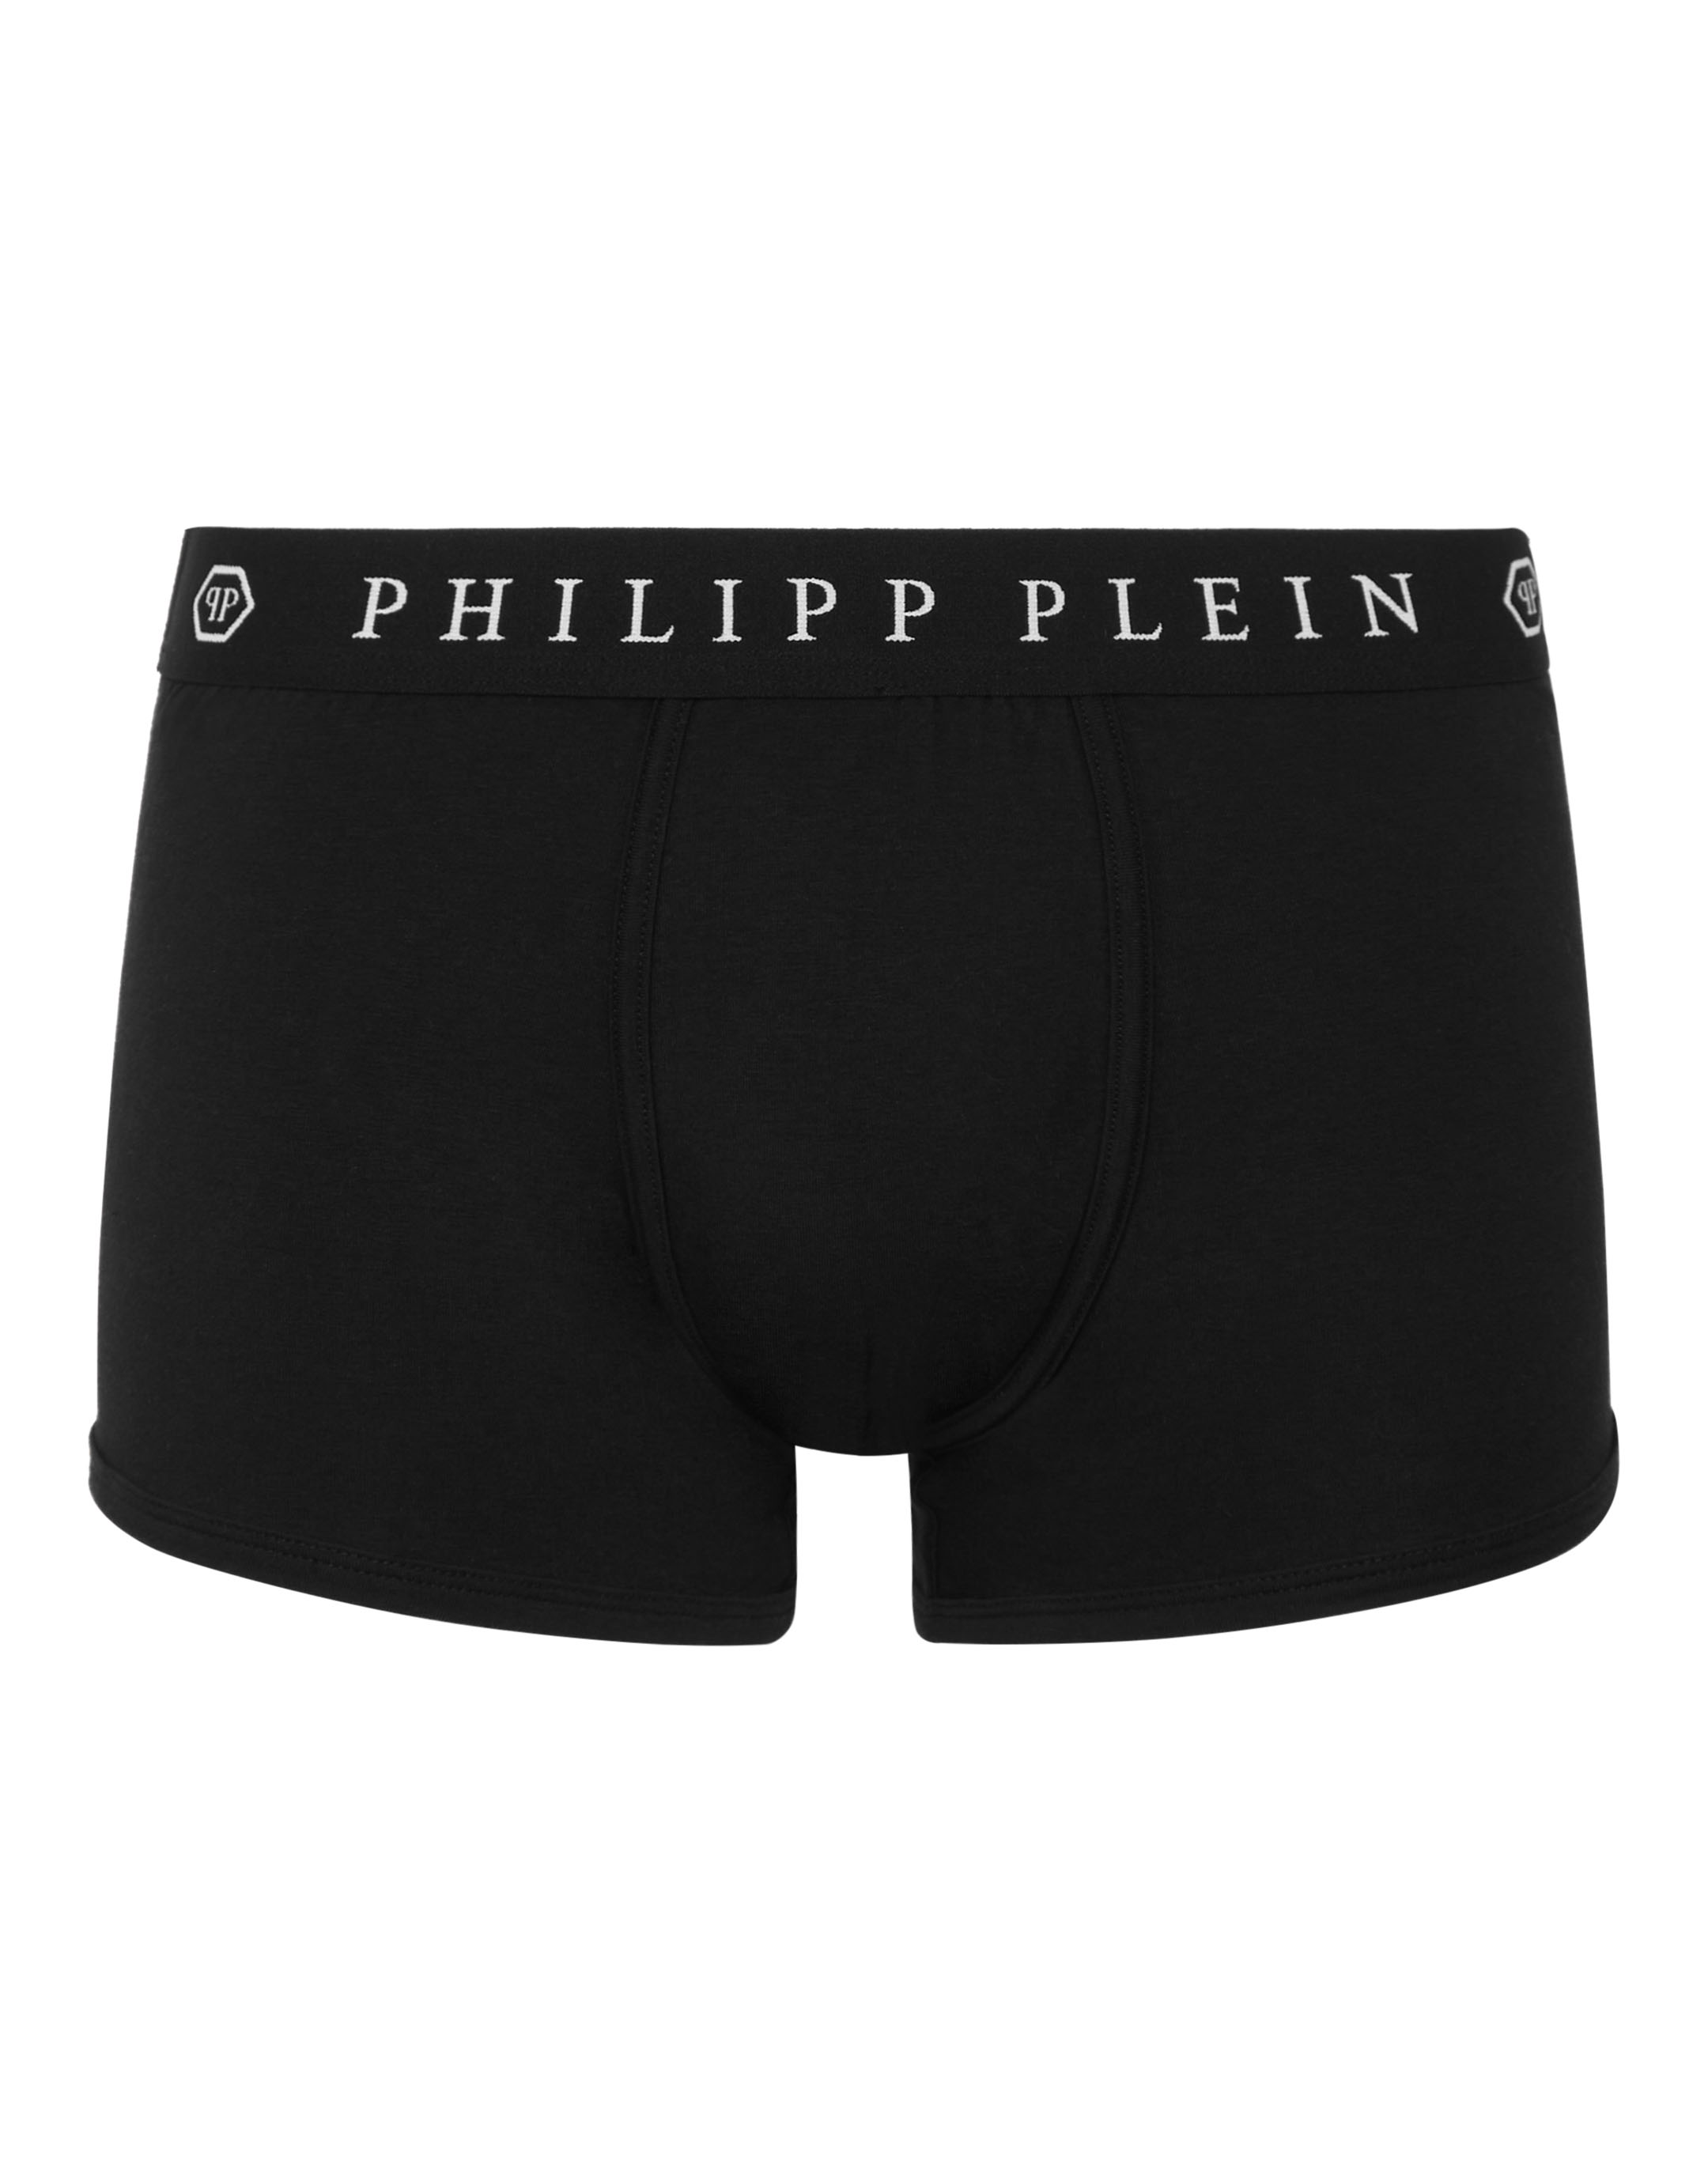 Boxer Philipp Plein TM | Philipp Plein